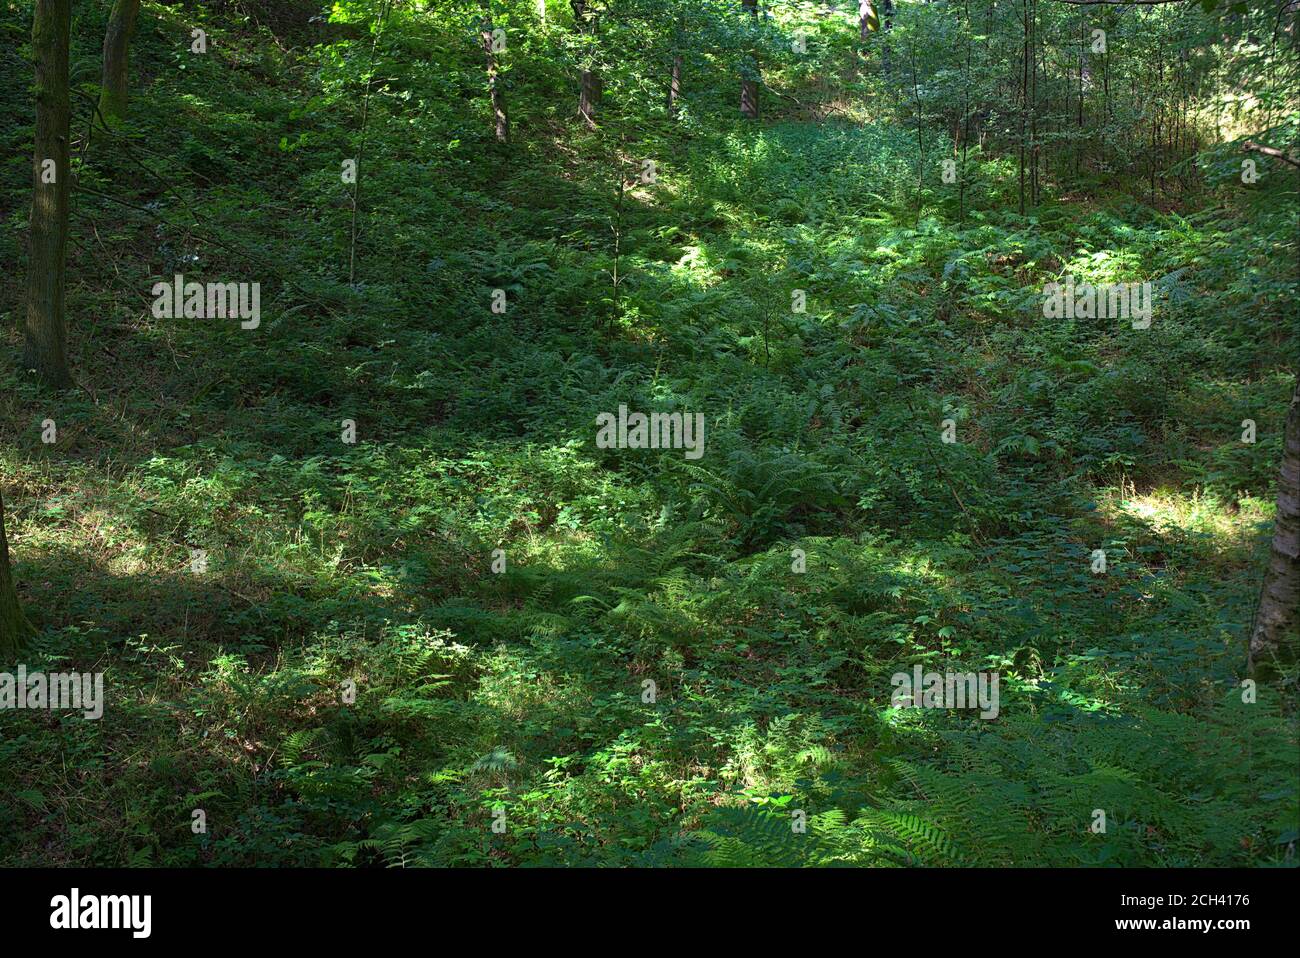 background of english ferns Stock Photo